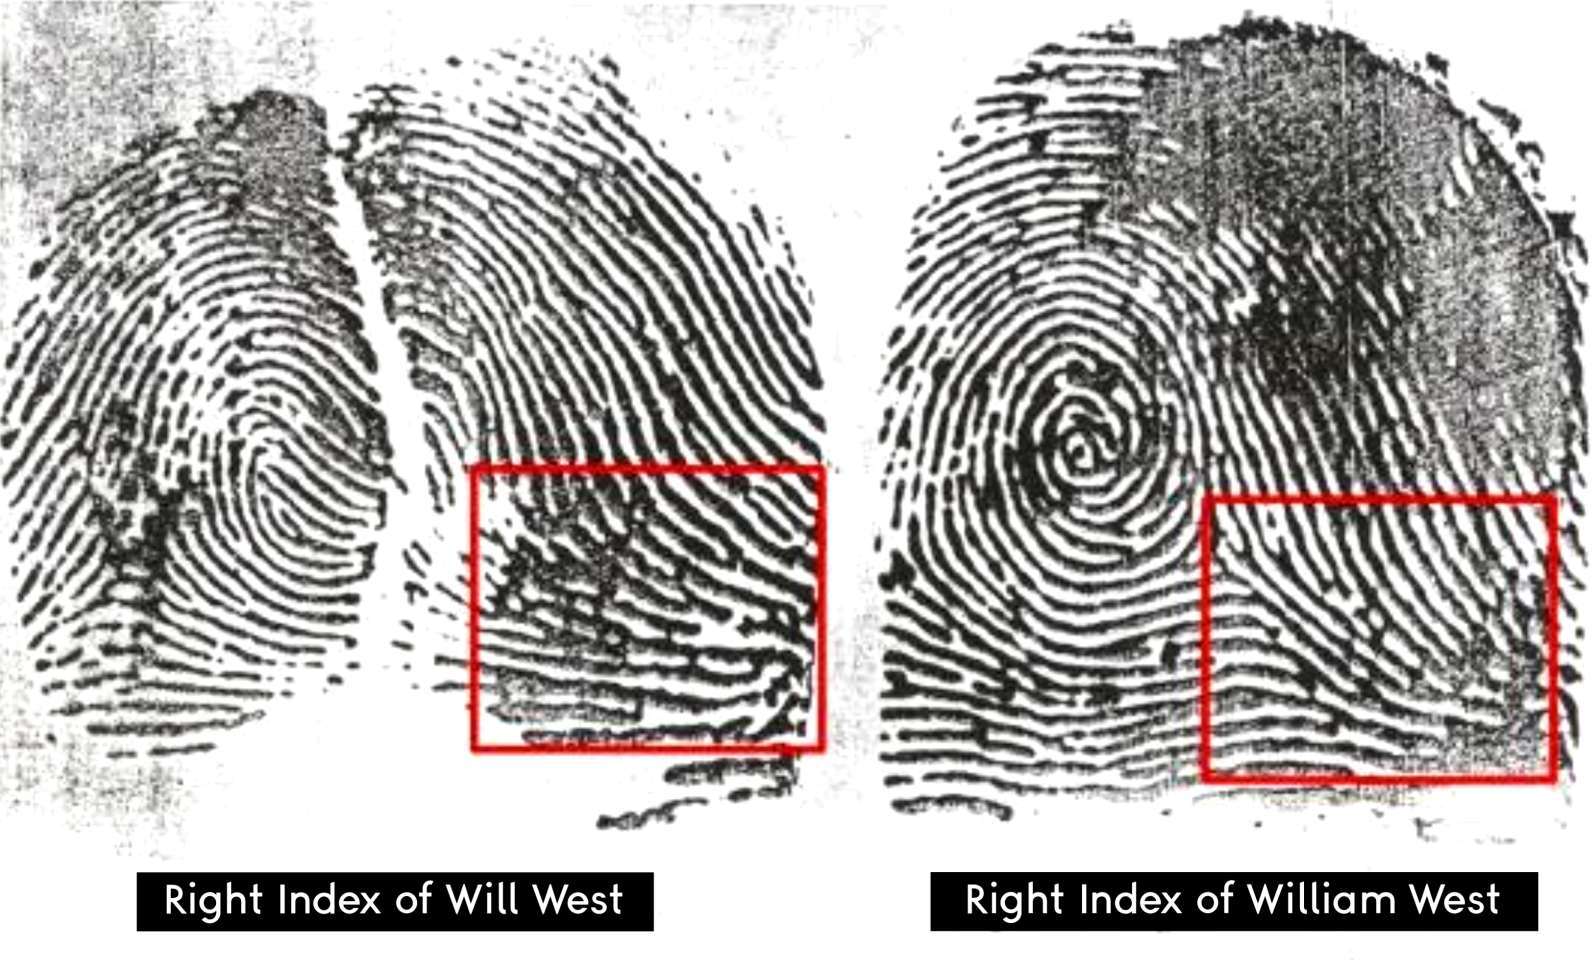 Will & William Wests - Vụ án gây hoang mang của hai tù nhân giống hệt nhau không liên quan 4